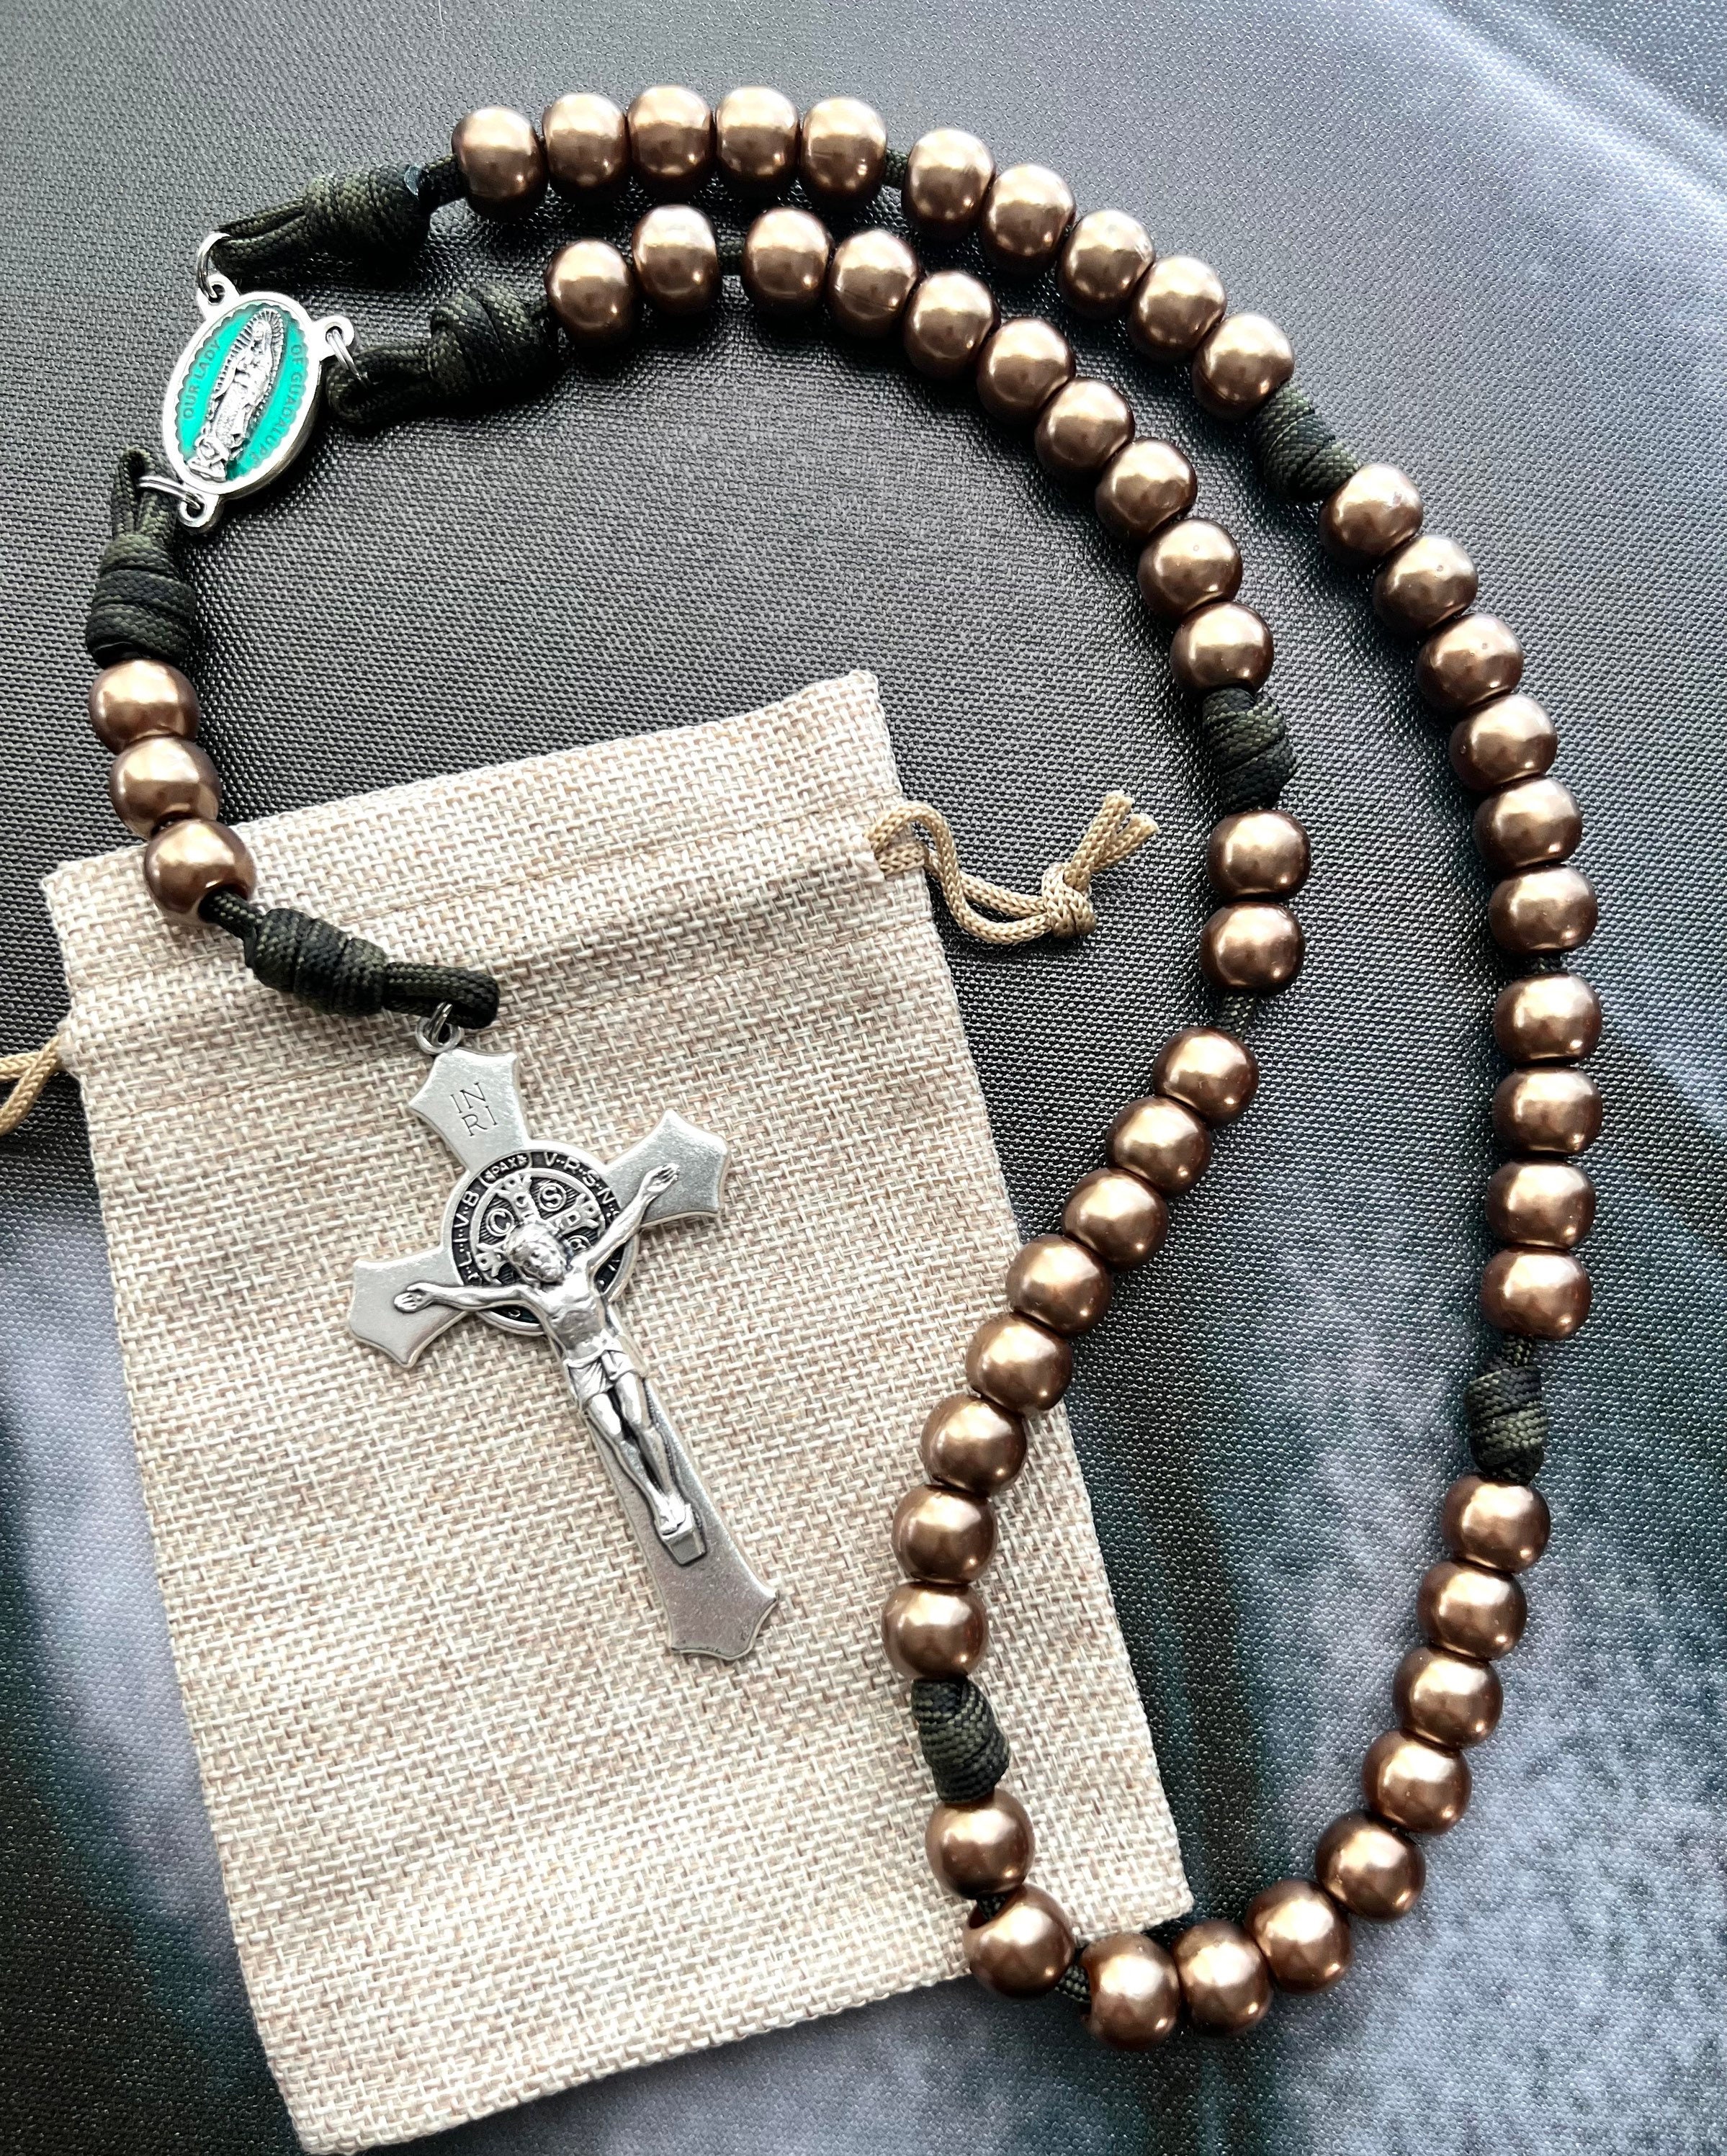 Guadalupe Virgin & Pearls Mini Rosary